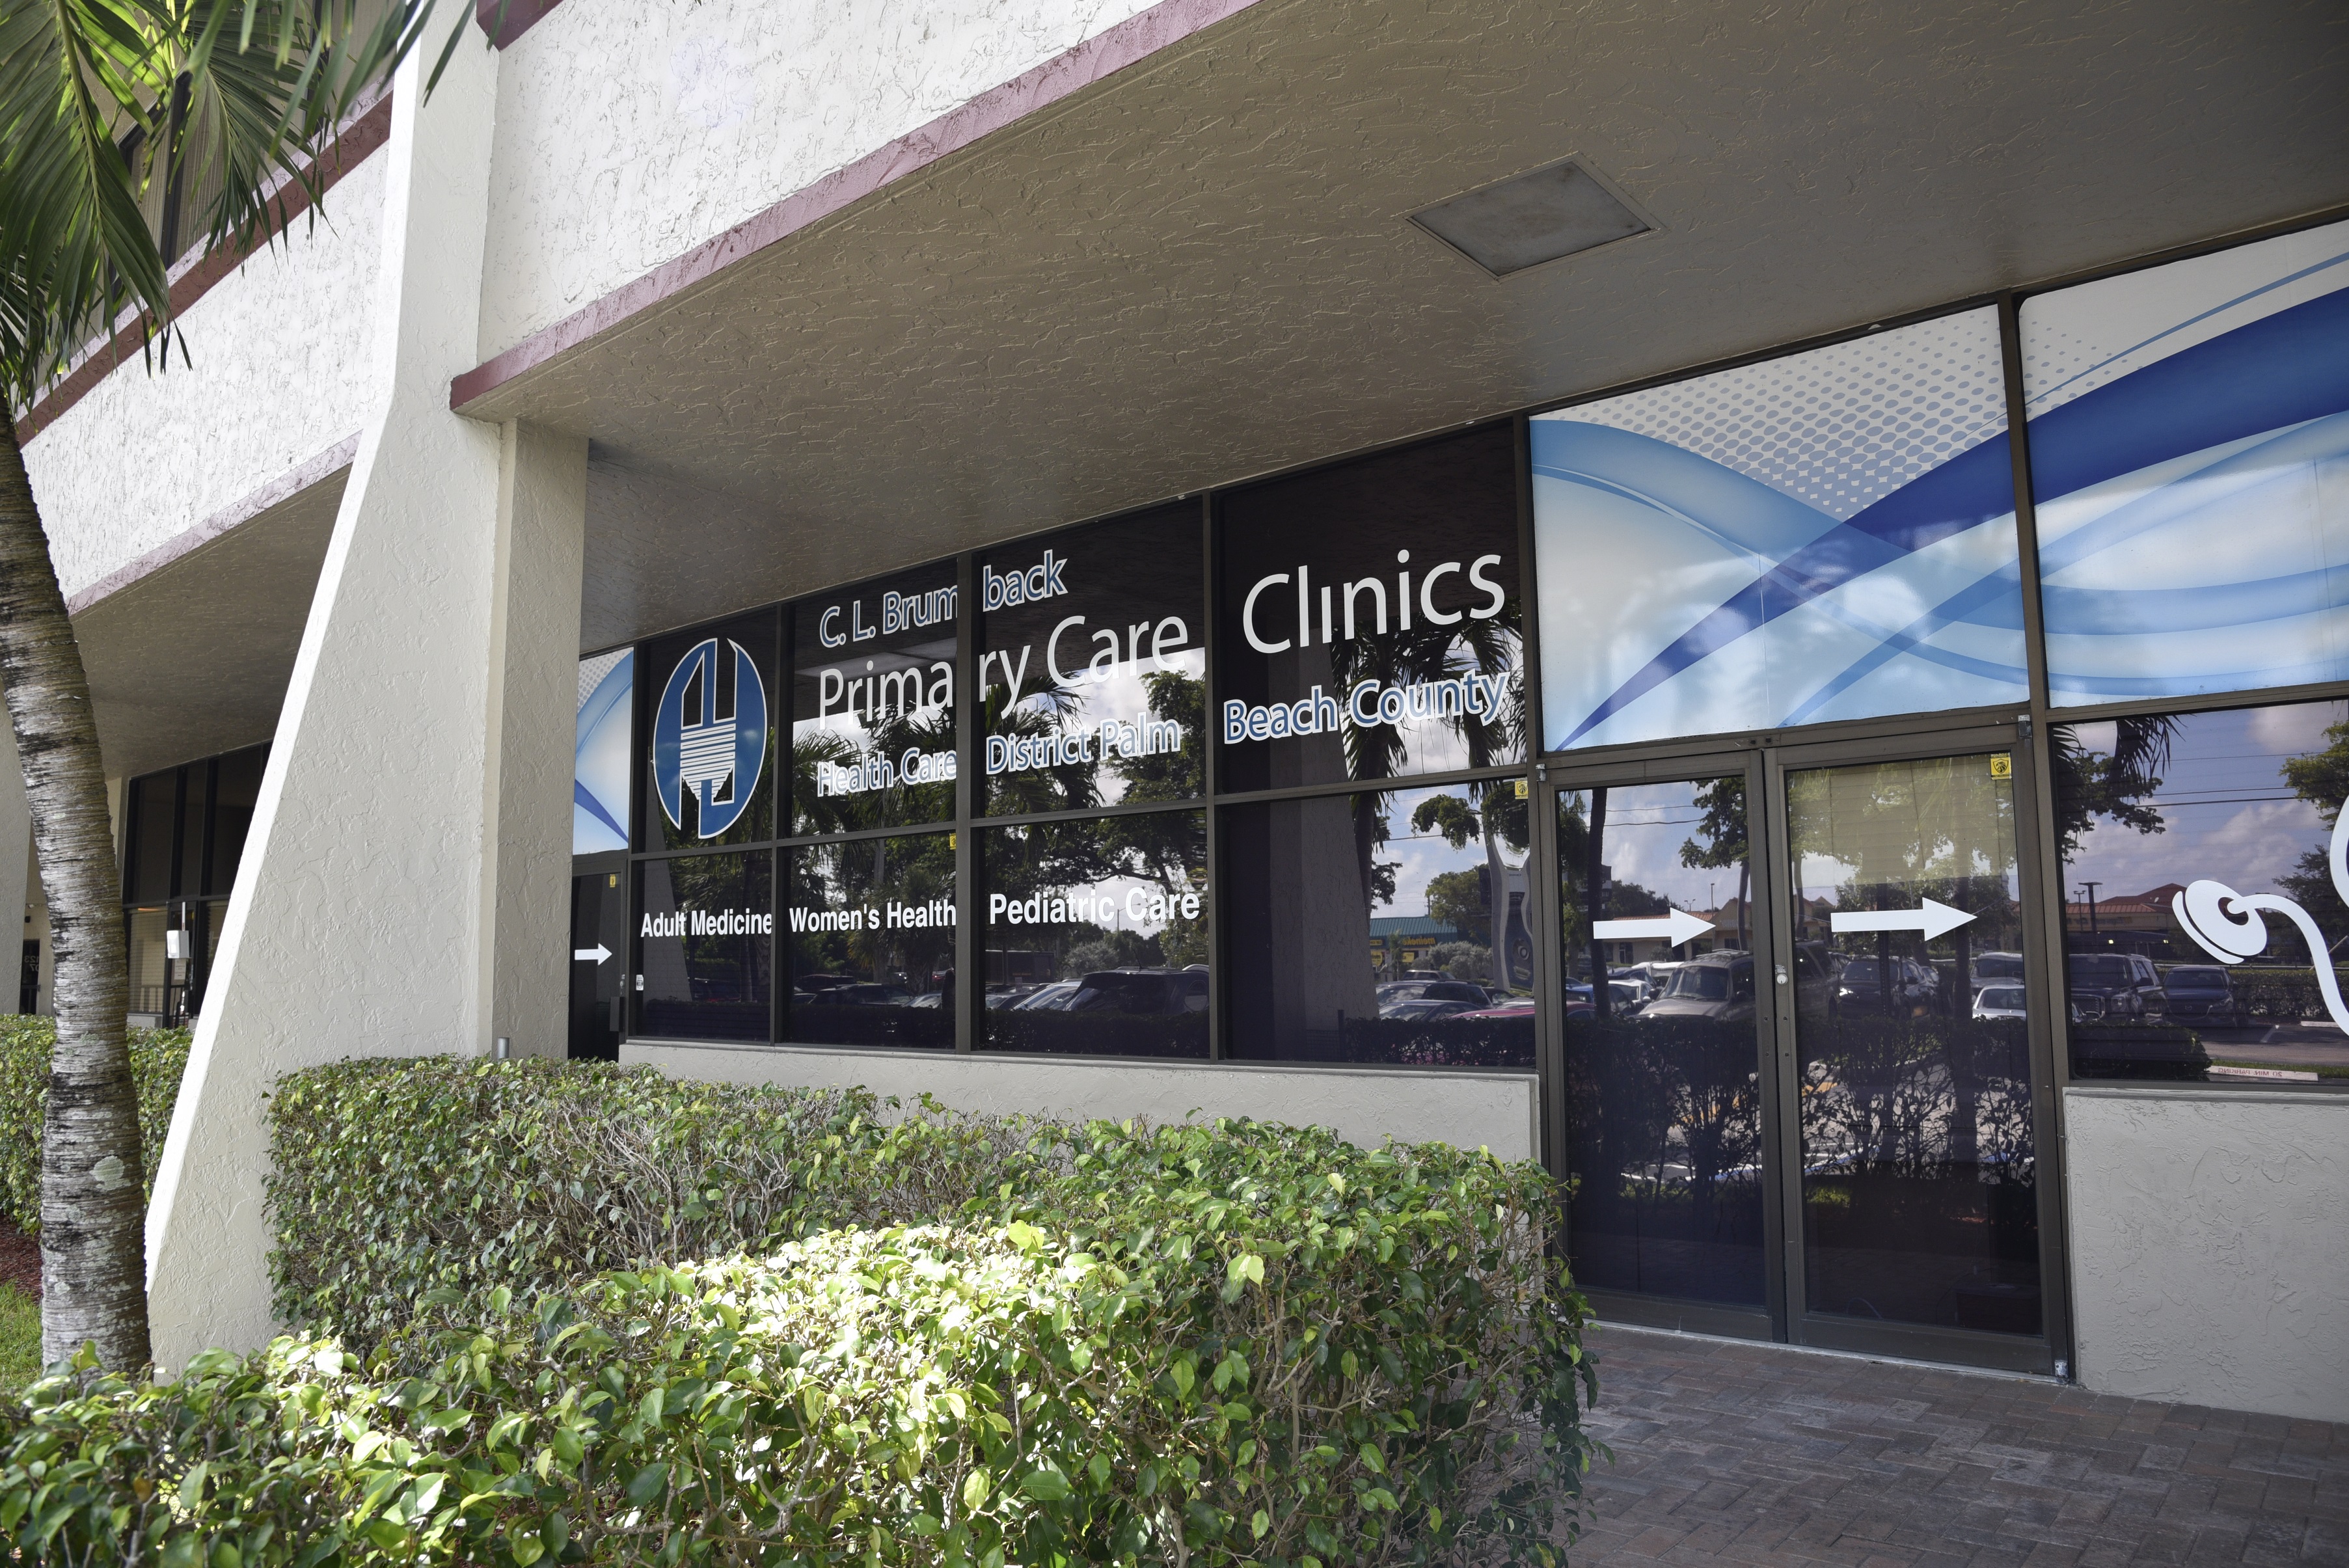 C. L. Brumback Primary Care Clinics-West Boca Raton